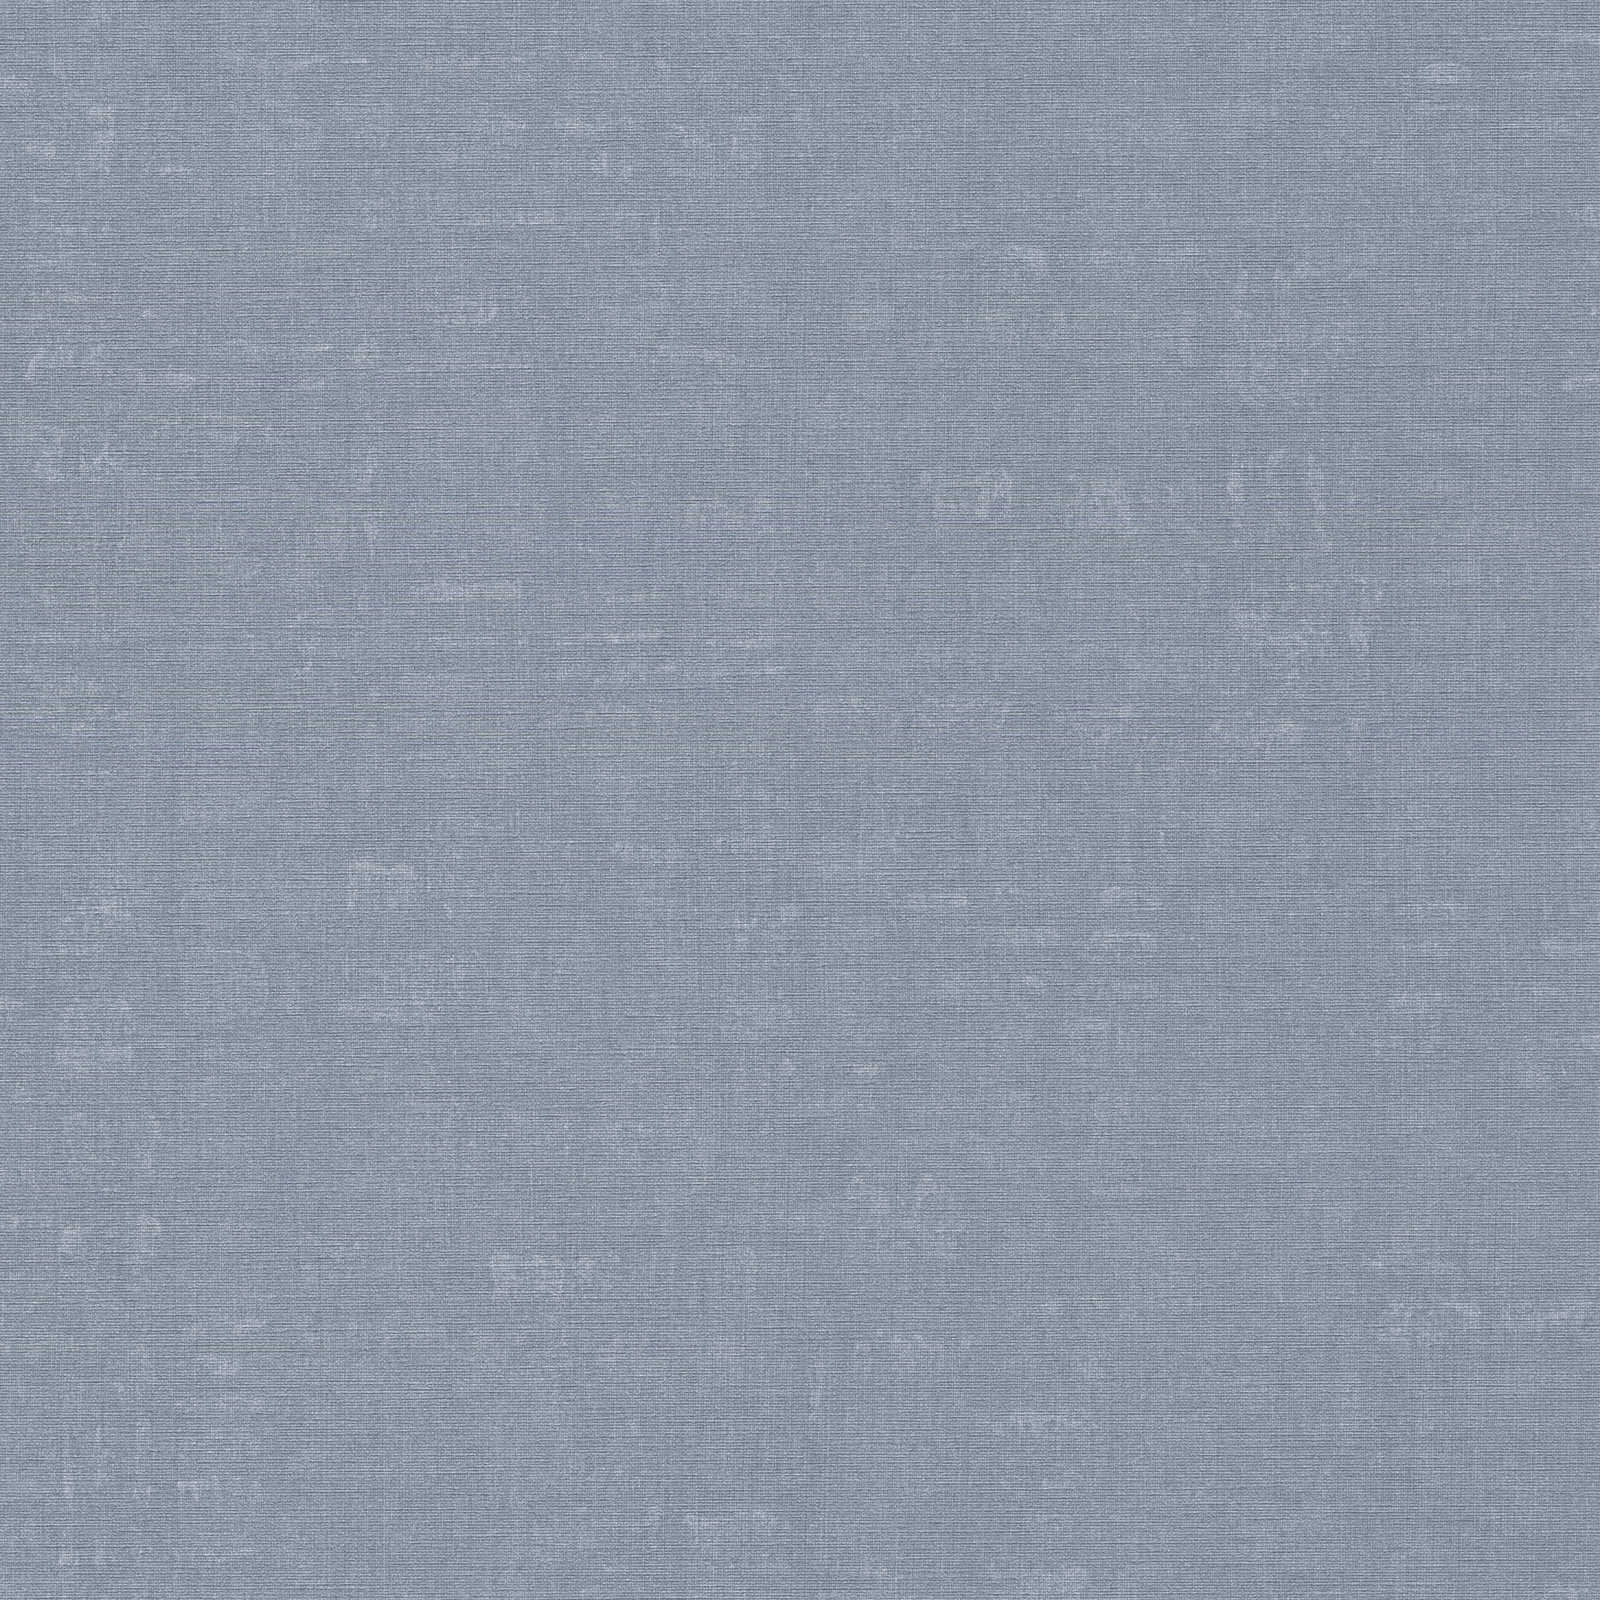 Nara - Mottled Plain plain wallpaper AS Creation Roll Light Blue  387457